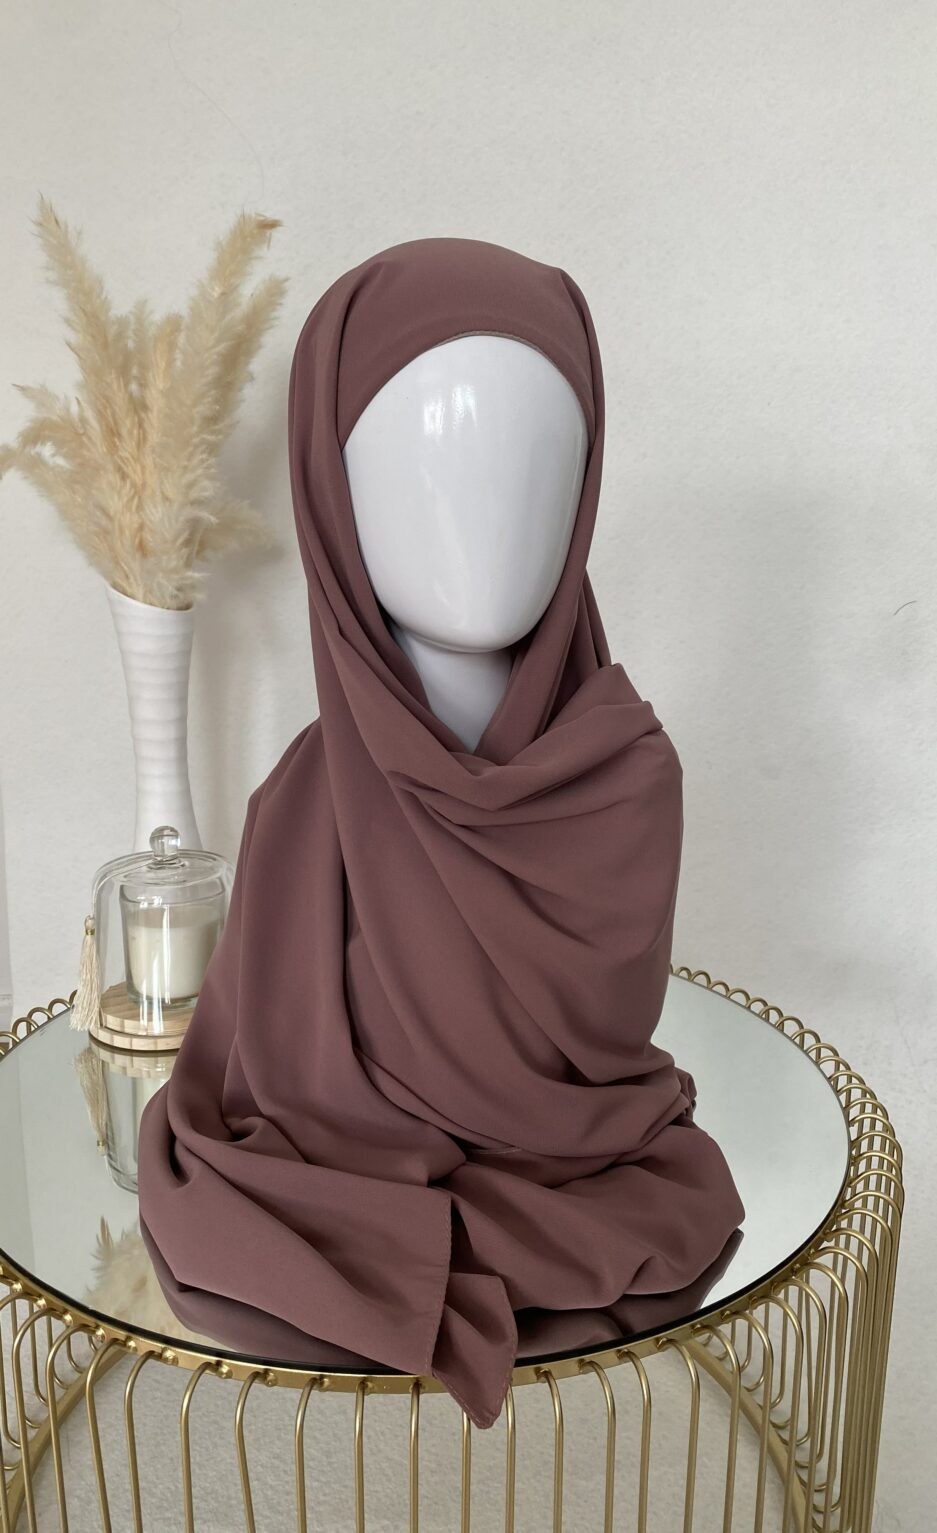 Vente en ligne hijab vieux rose à enfiler avec bonnet, en gros et au détail voile soie de médine de bonne qualité 100% opaque, long, livraison rapide en 24H Nouveau hijab en soie de médine à enfilé avec bonnet intégrer, Cendrijab est situé dans le nord de la France